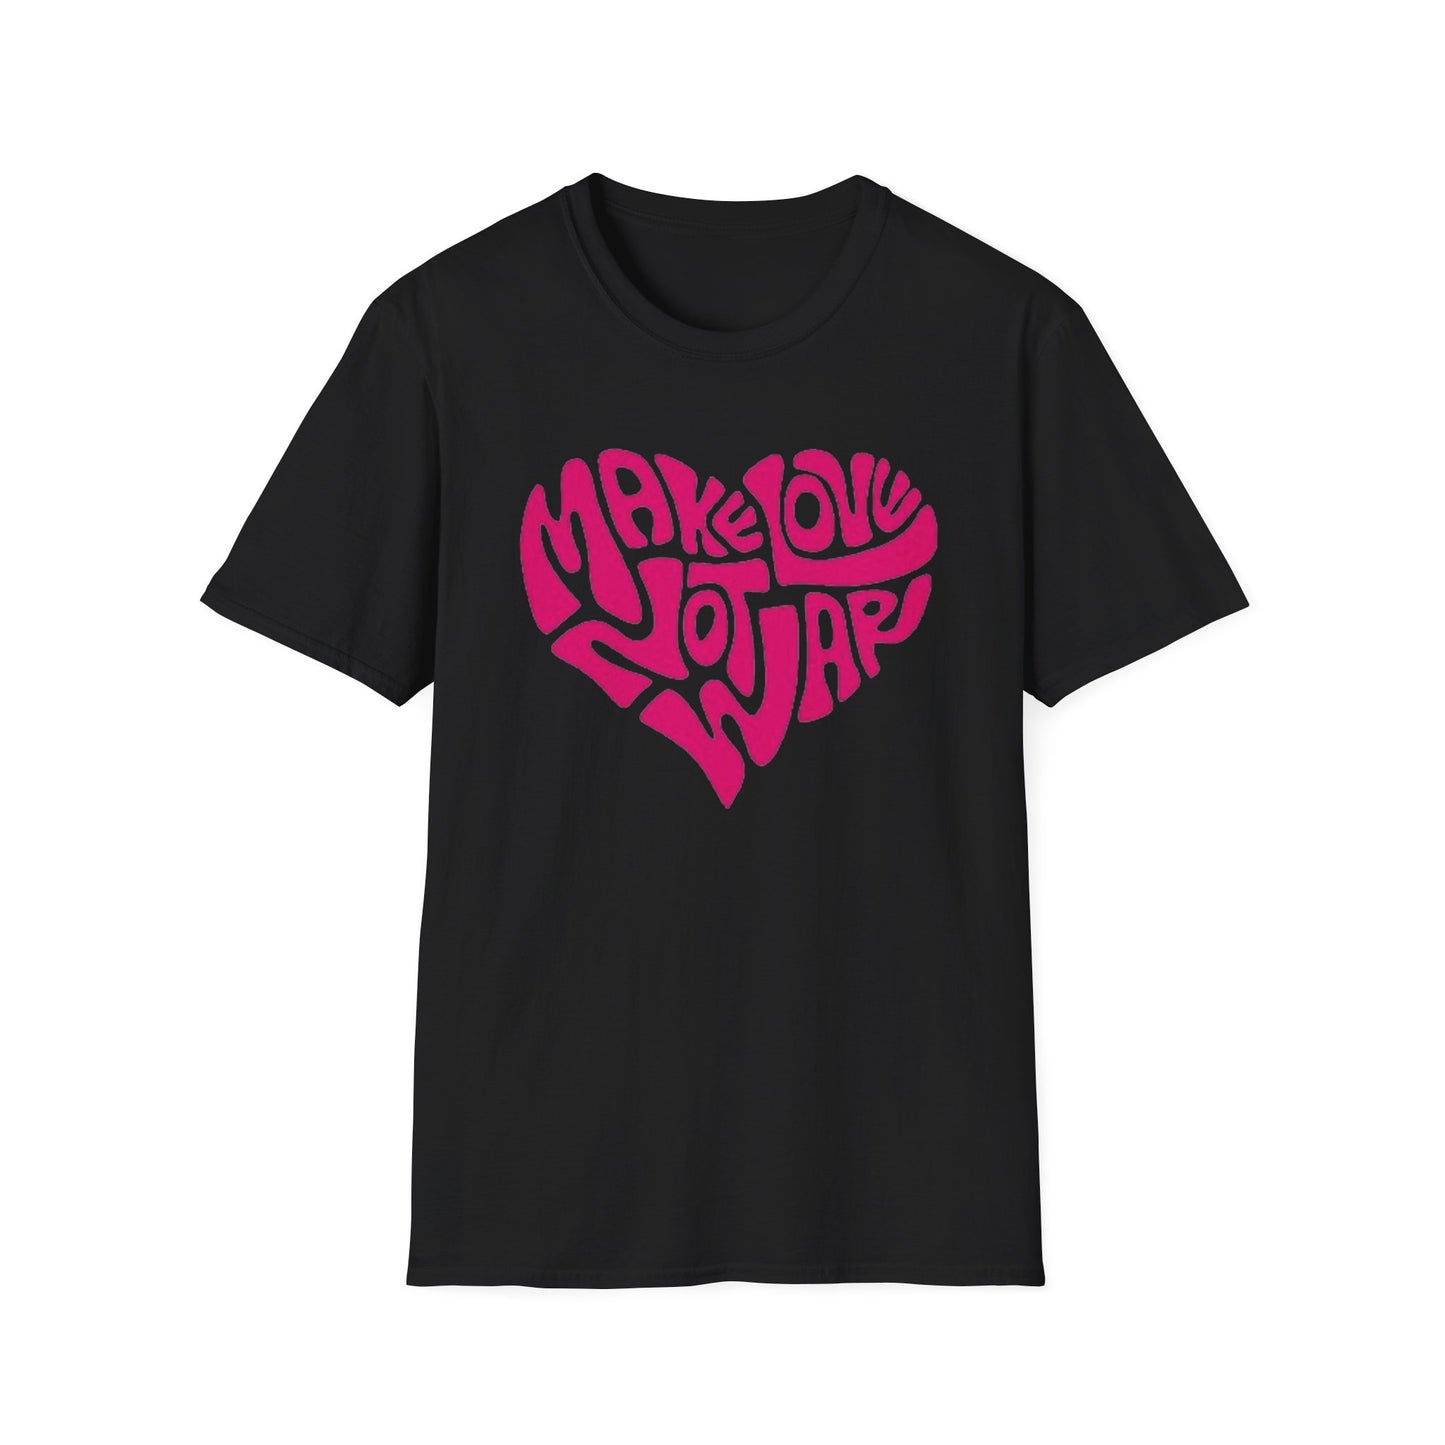 Make Love Not War - Unisex Softstyle T-Shirt